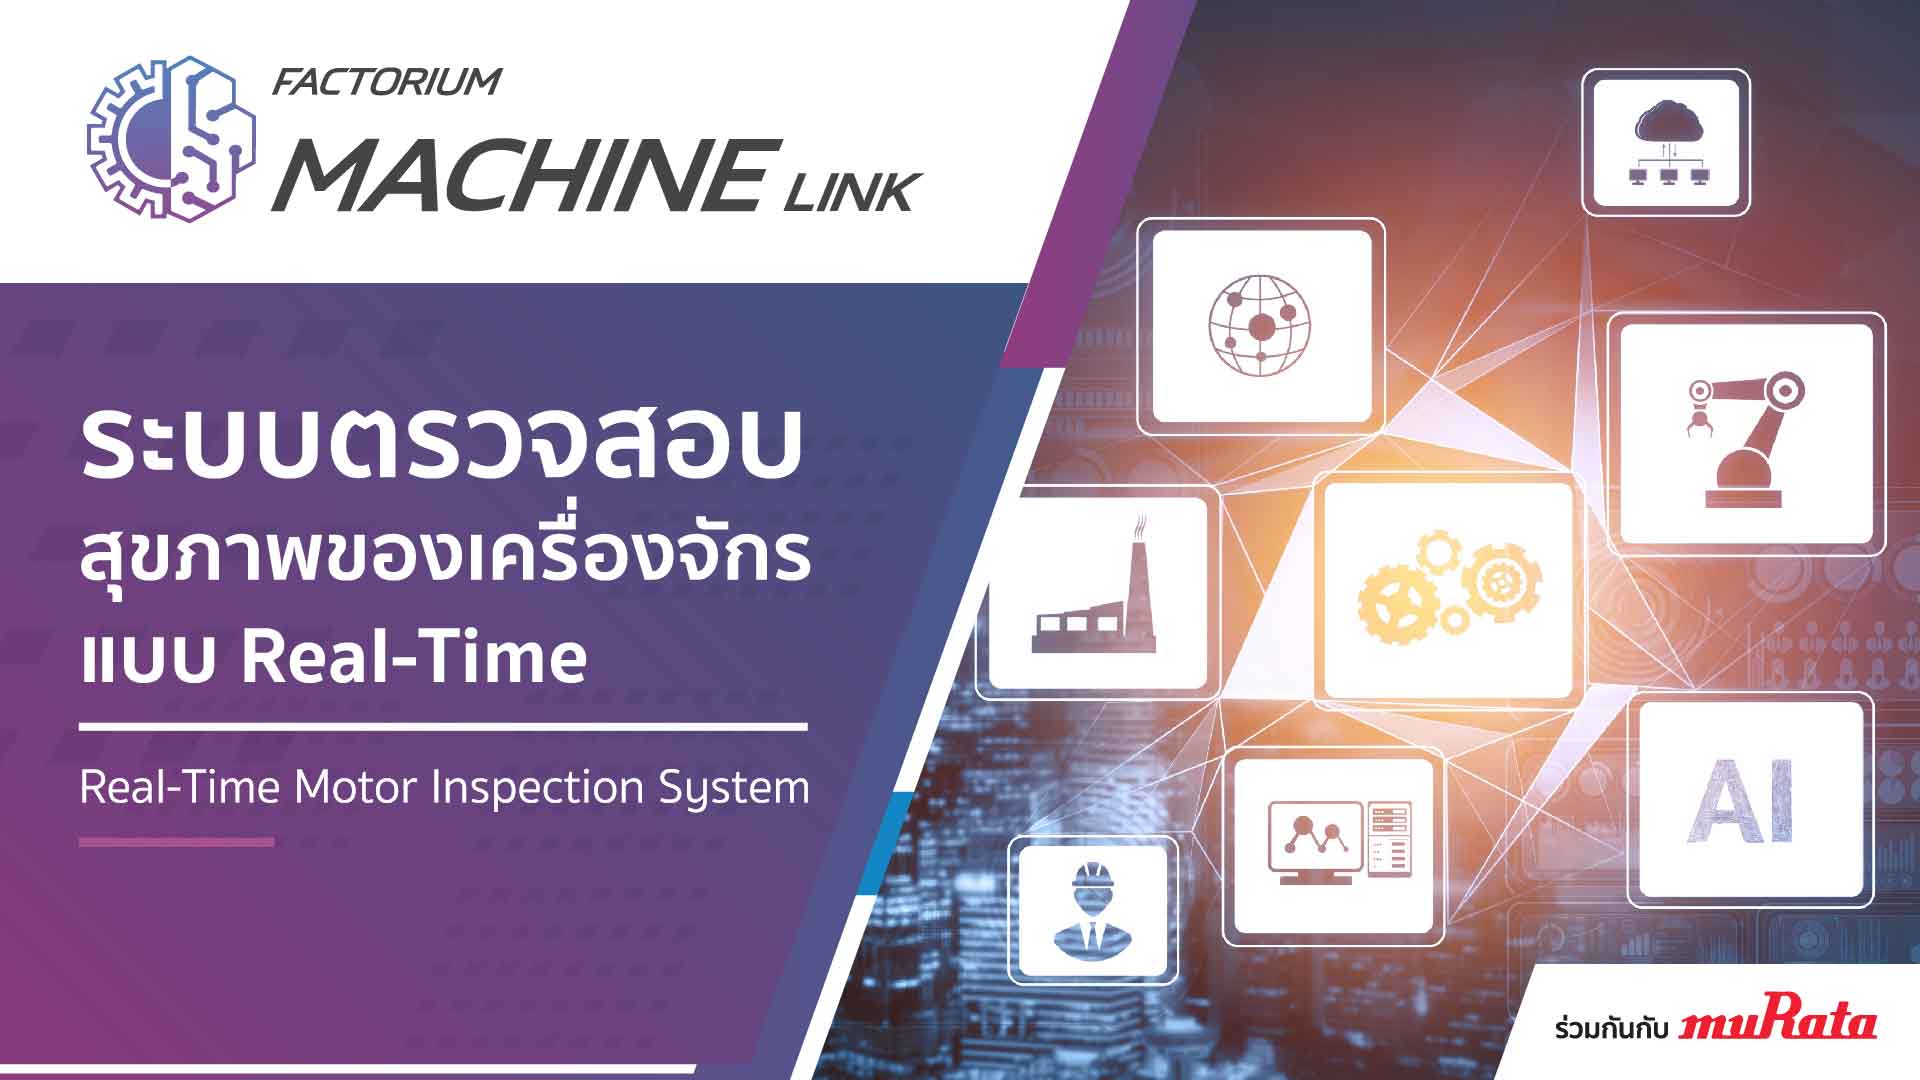 Machinelink-02